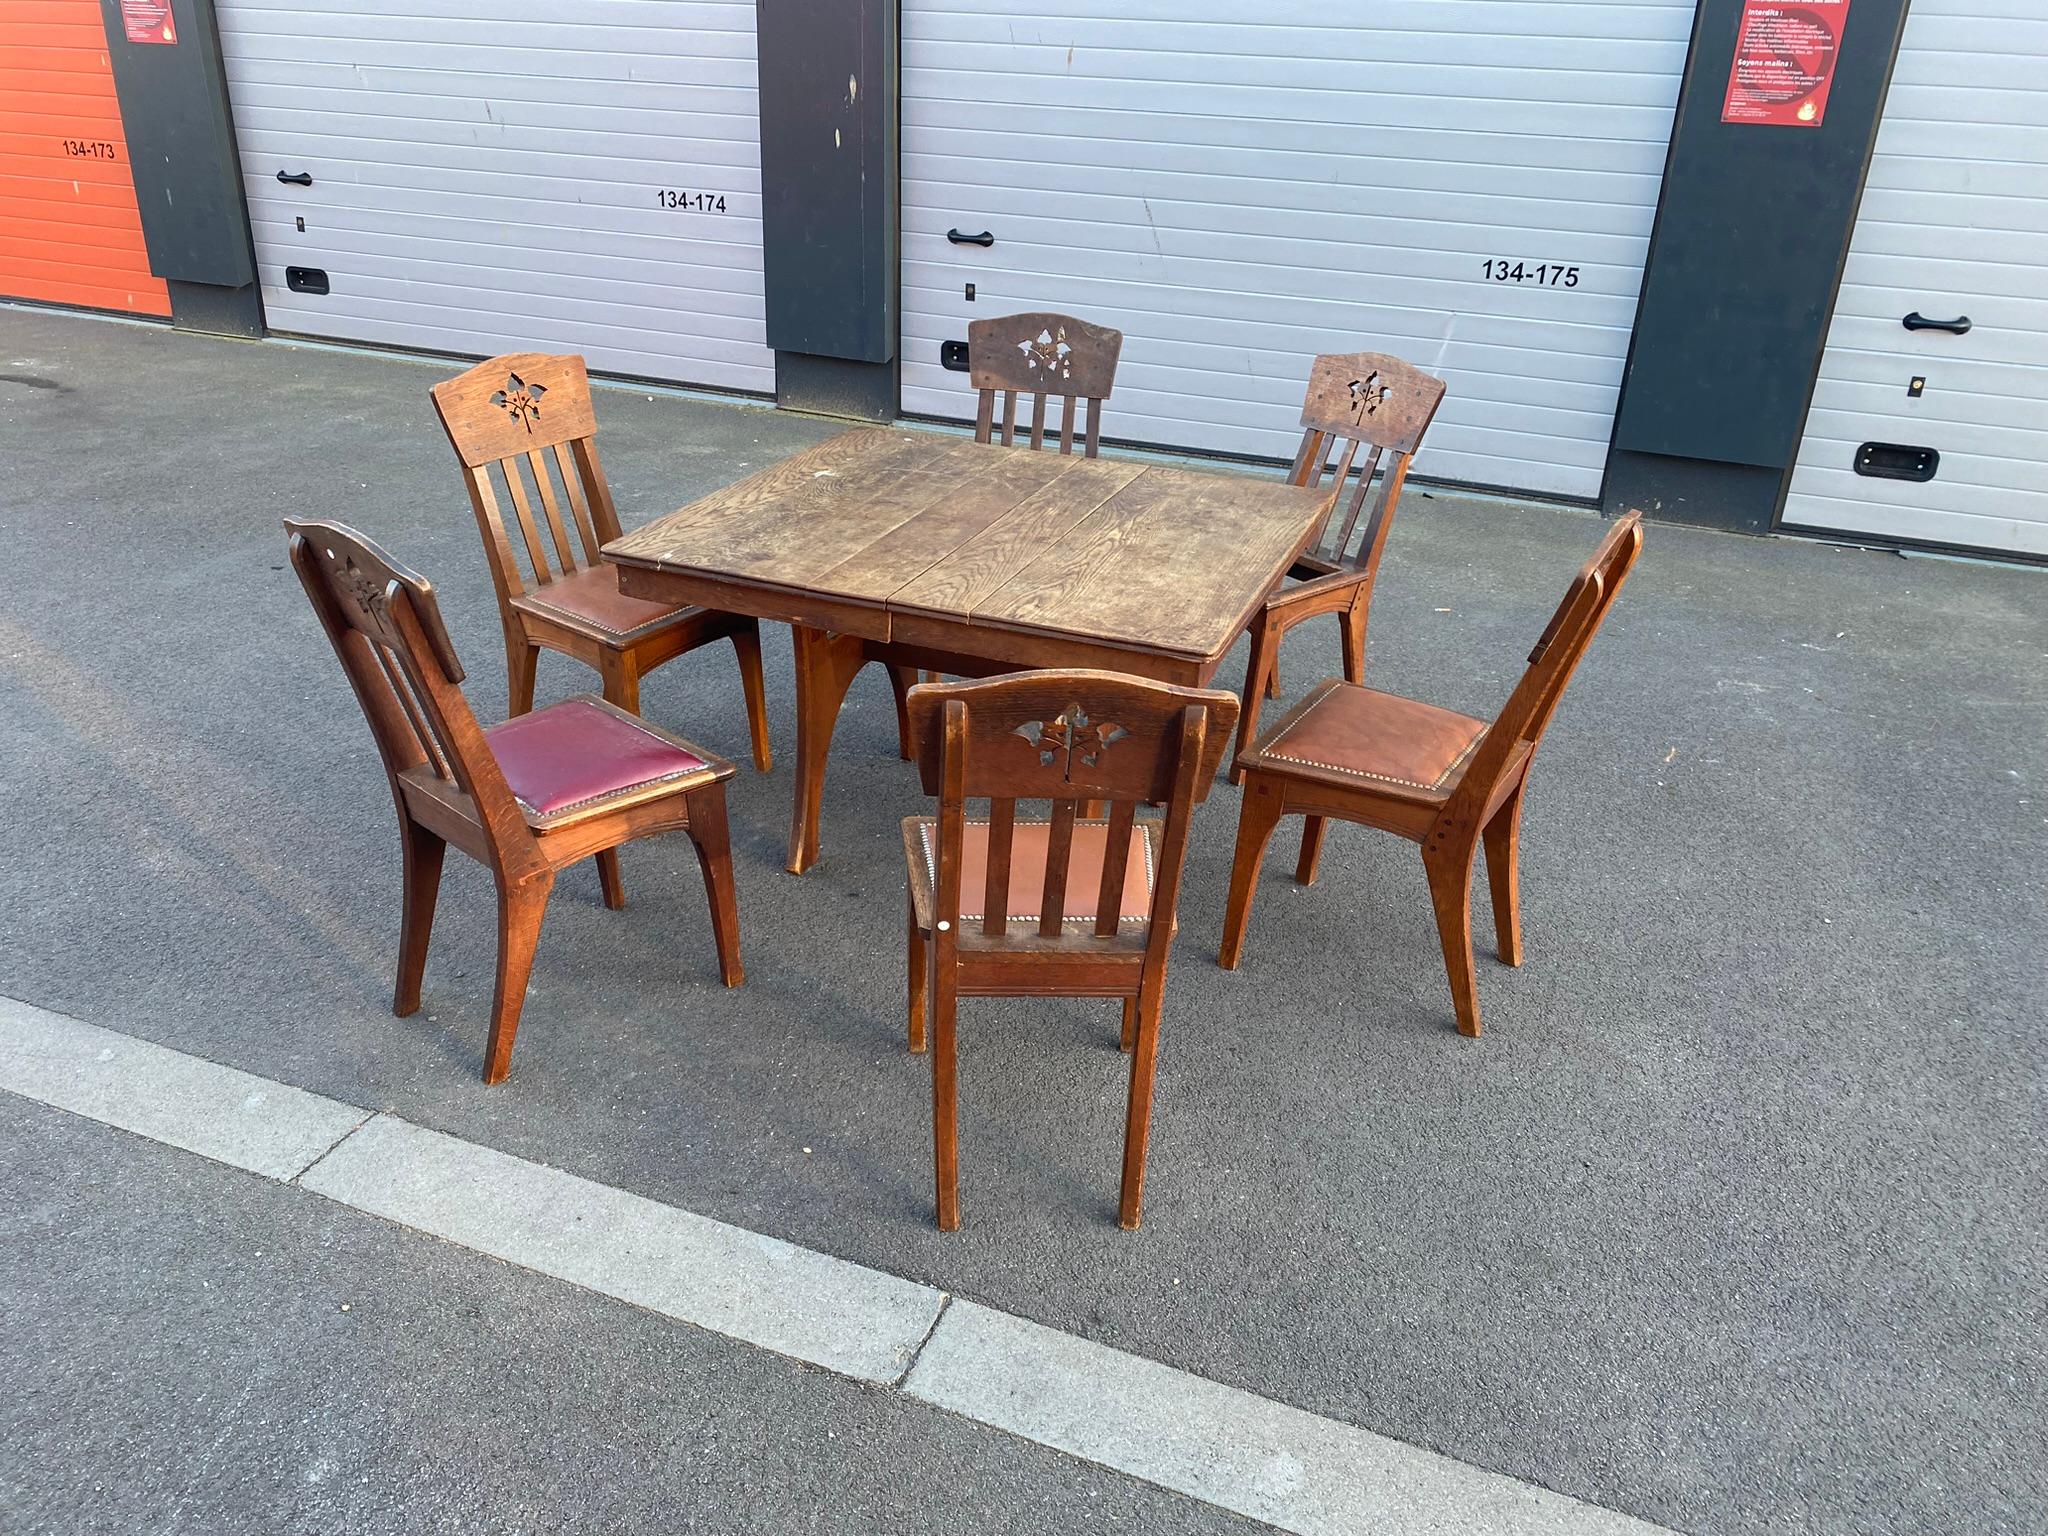 Léon Jallot '1874-1967' Paar Sessel aus Eichenholz und Leder um 1920
2 Stühle haben keine Sitzfläche, 2 Stühle mit Lederbezug, 2 Stühle mit Kunstlederbezug
die Patina muss überprüft werden, das Holz ist schmutzig, aber in gutem Zustand
kann getrennt